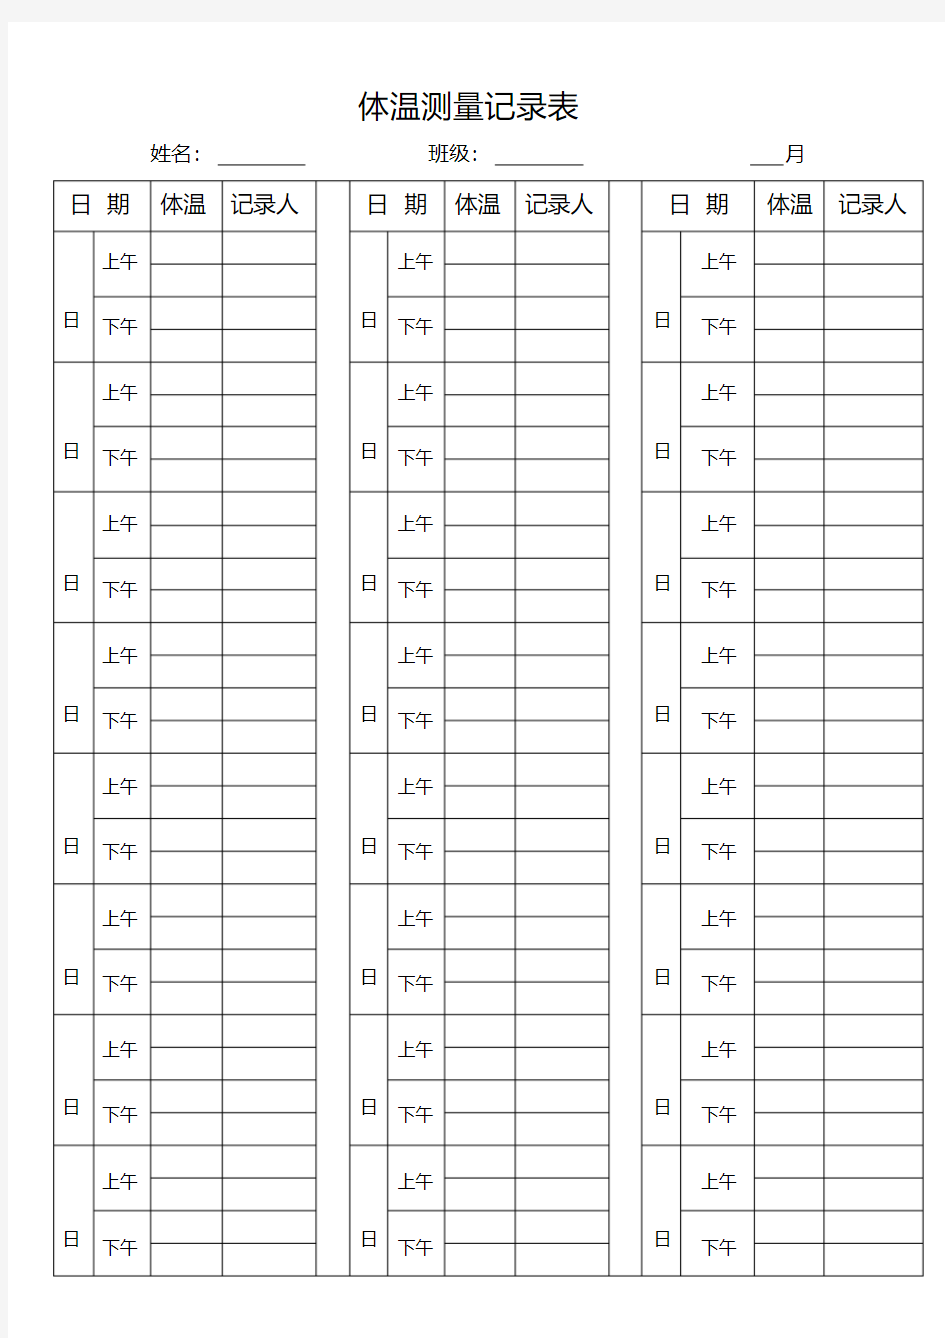 体温测量记录表.pdf